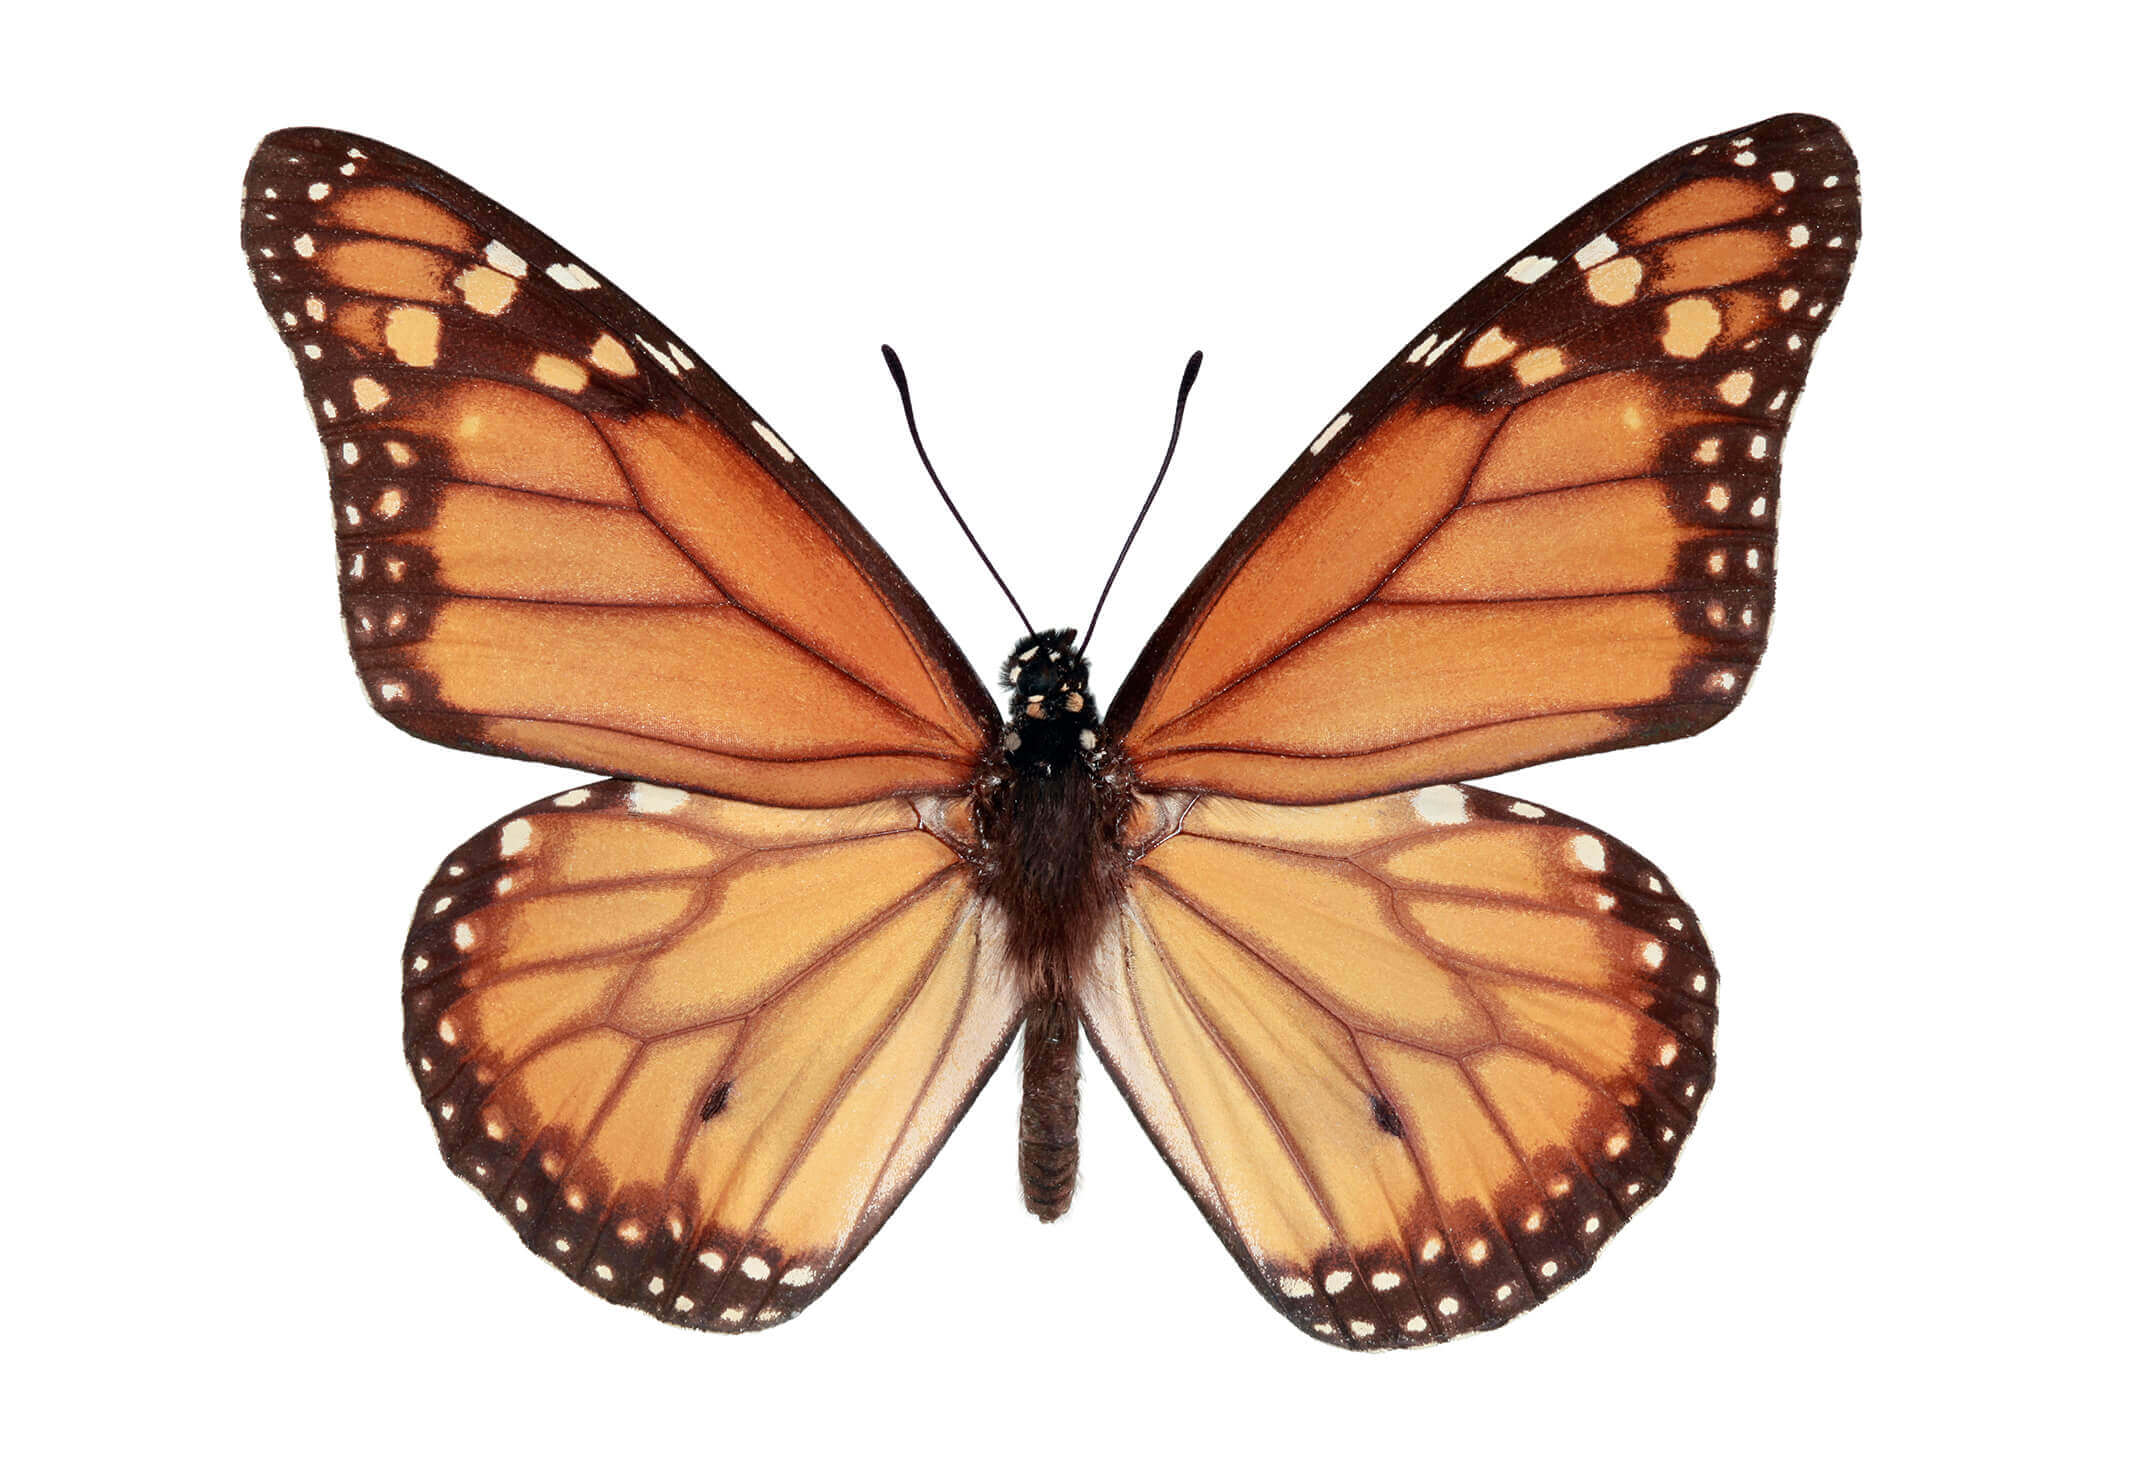 Mariposa monarca del sur (Danaus erippus). Está emparentada con la emblemática mariposa monarca del norte, que migra desde EE.UU. y Canadá hasta México. La coloración de sus alas es igual por ambos lados y puede cubrir grandes distancias de vuelo: desde el extremo norte del país hasta la región de La Araucanía.